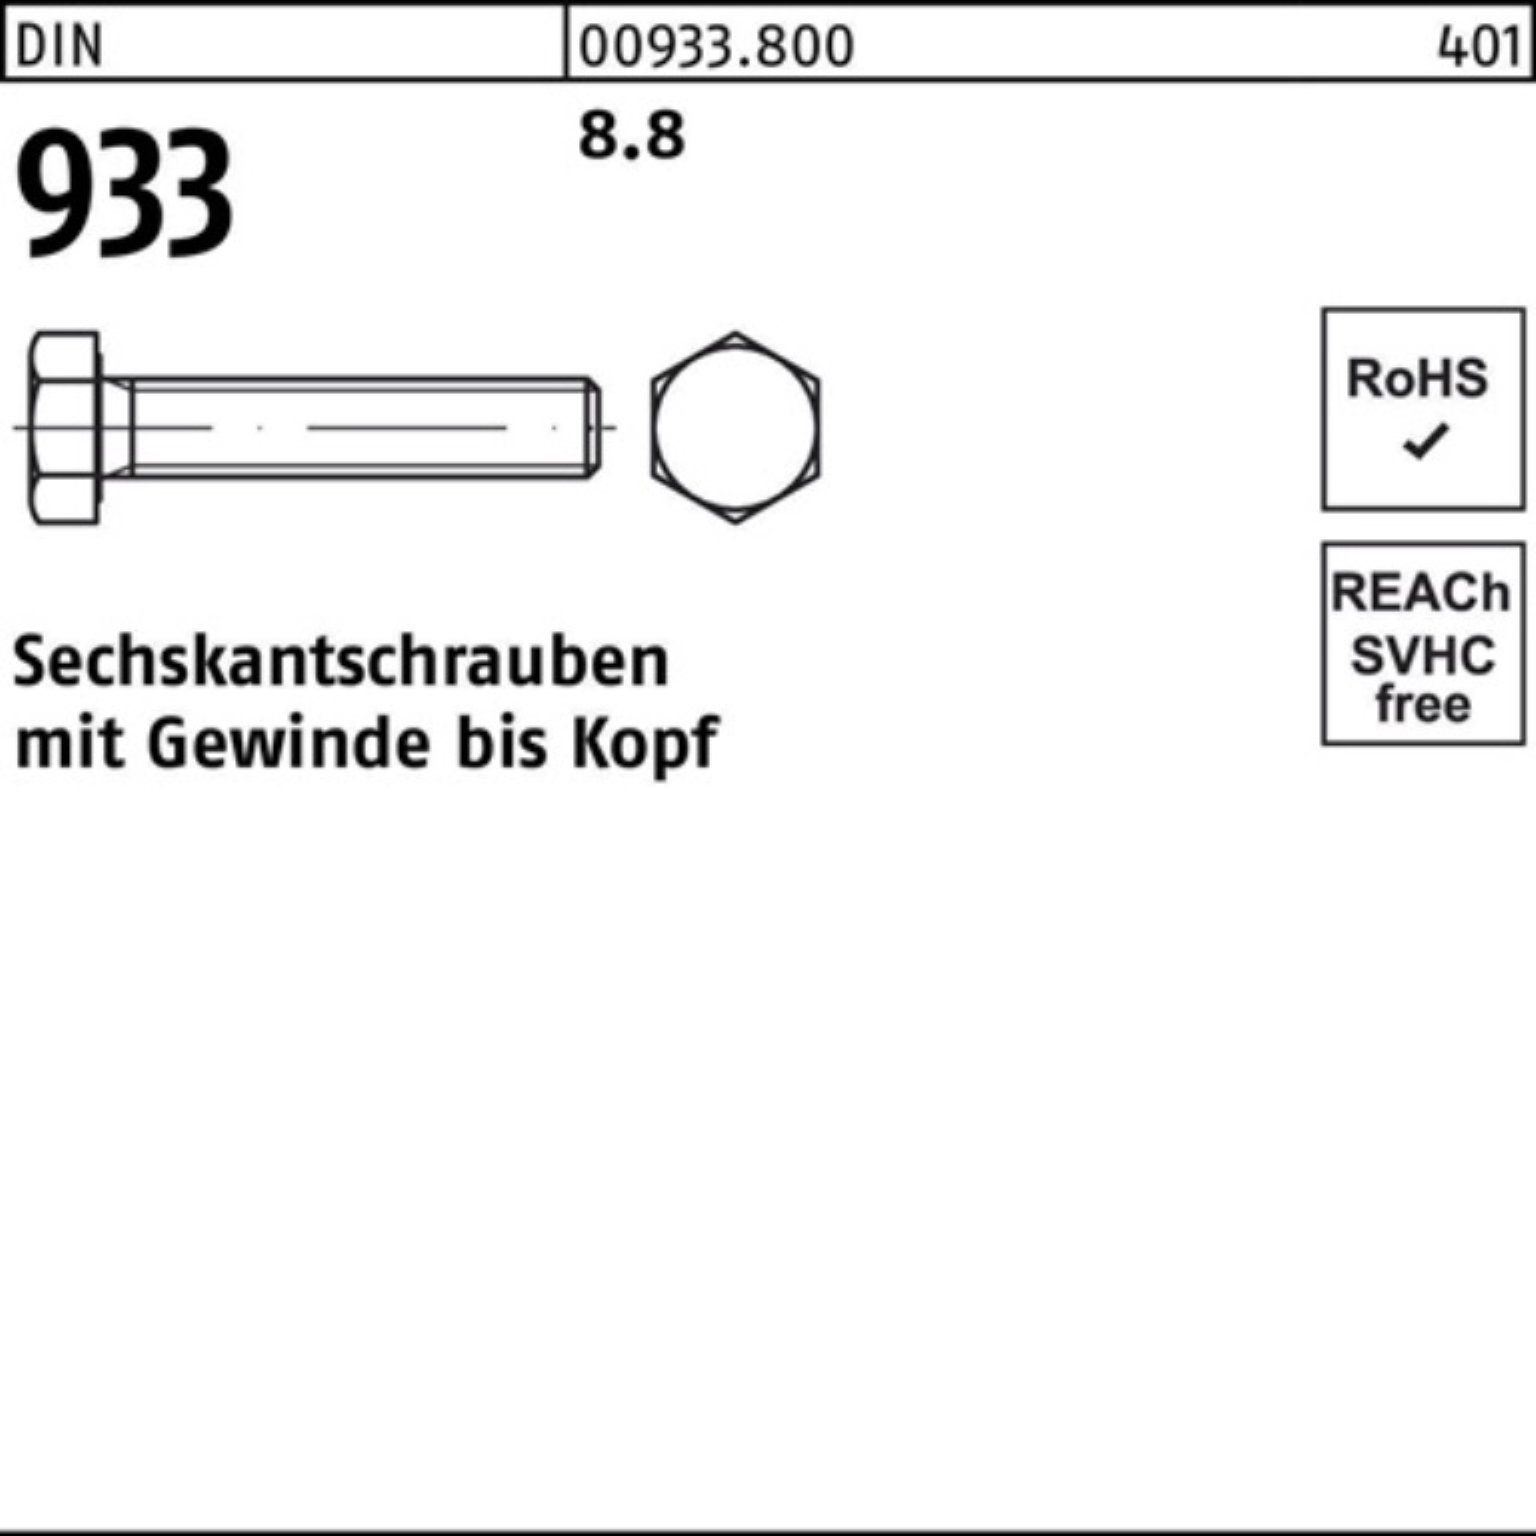 Reyher Sechskantschraube 500er Pack Sechskantschraube Stück 933 6 500 8 VG M6x 8.8 933 DIN DIN